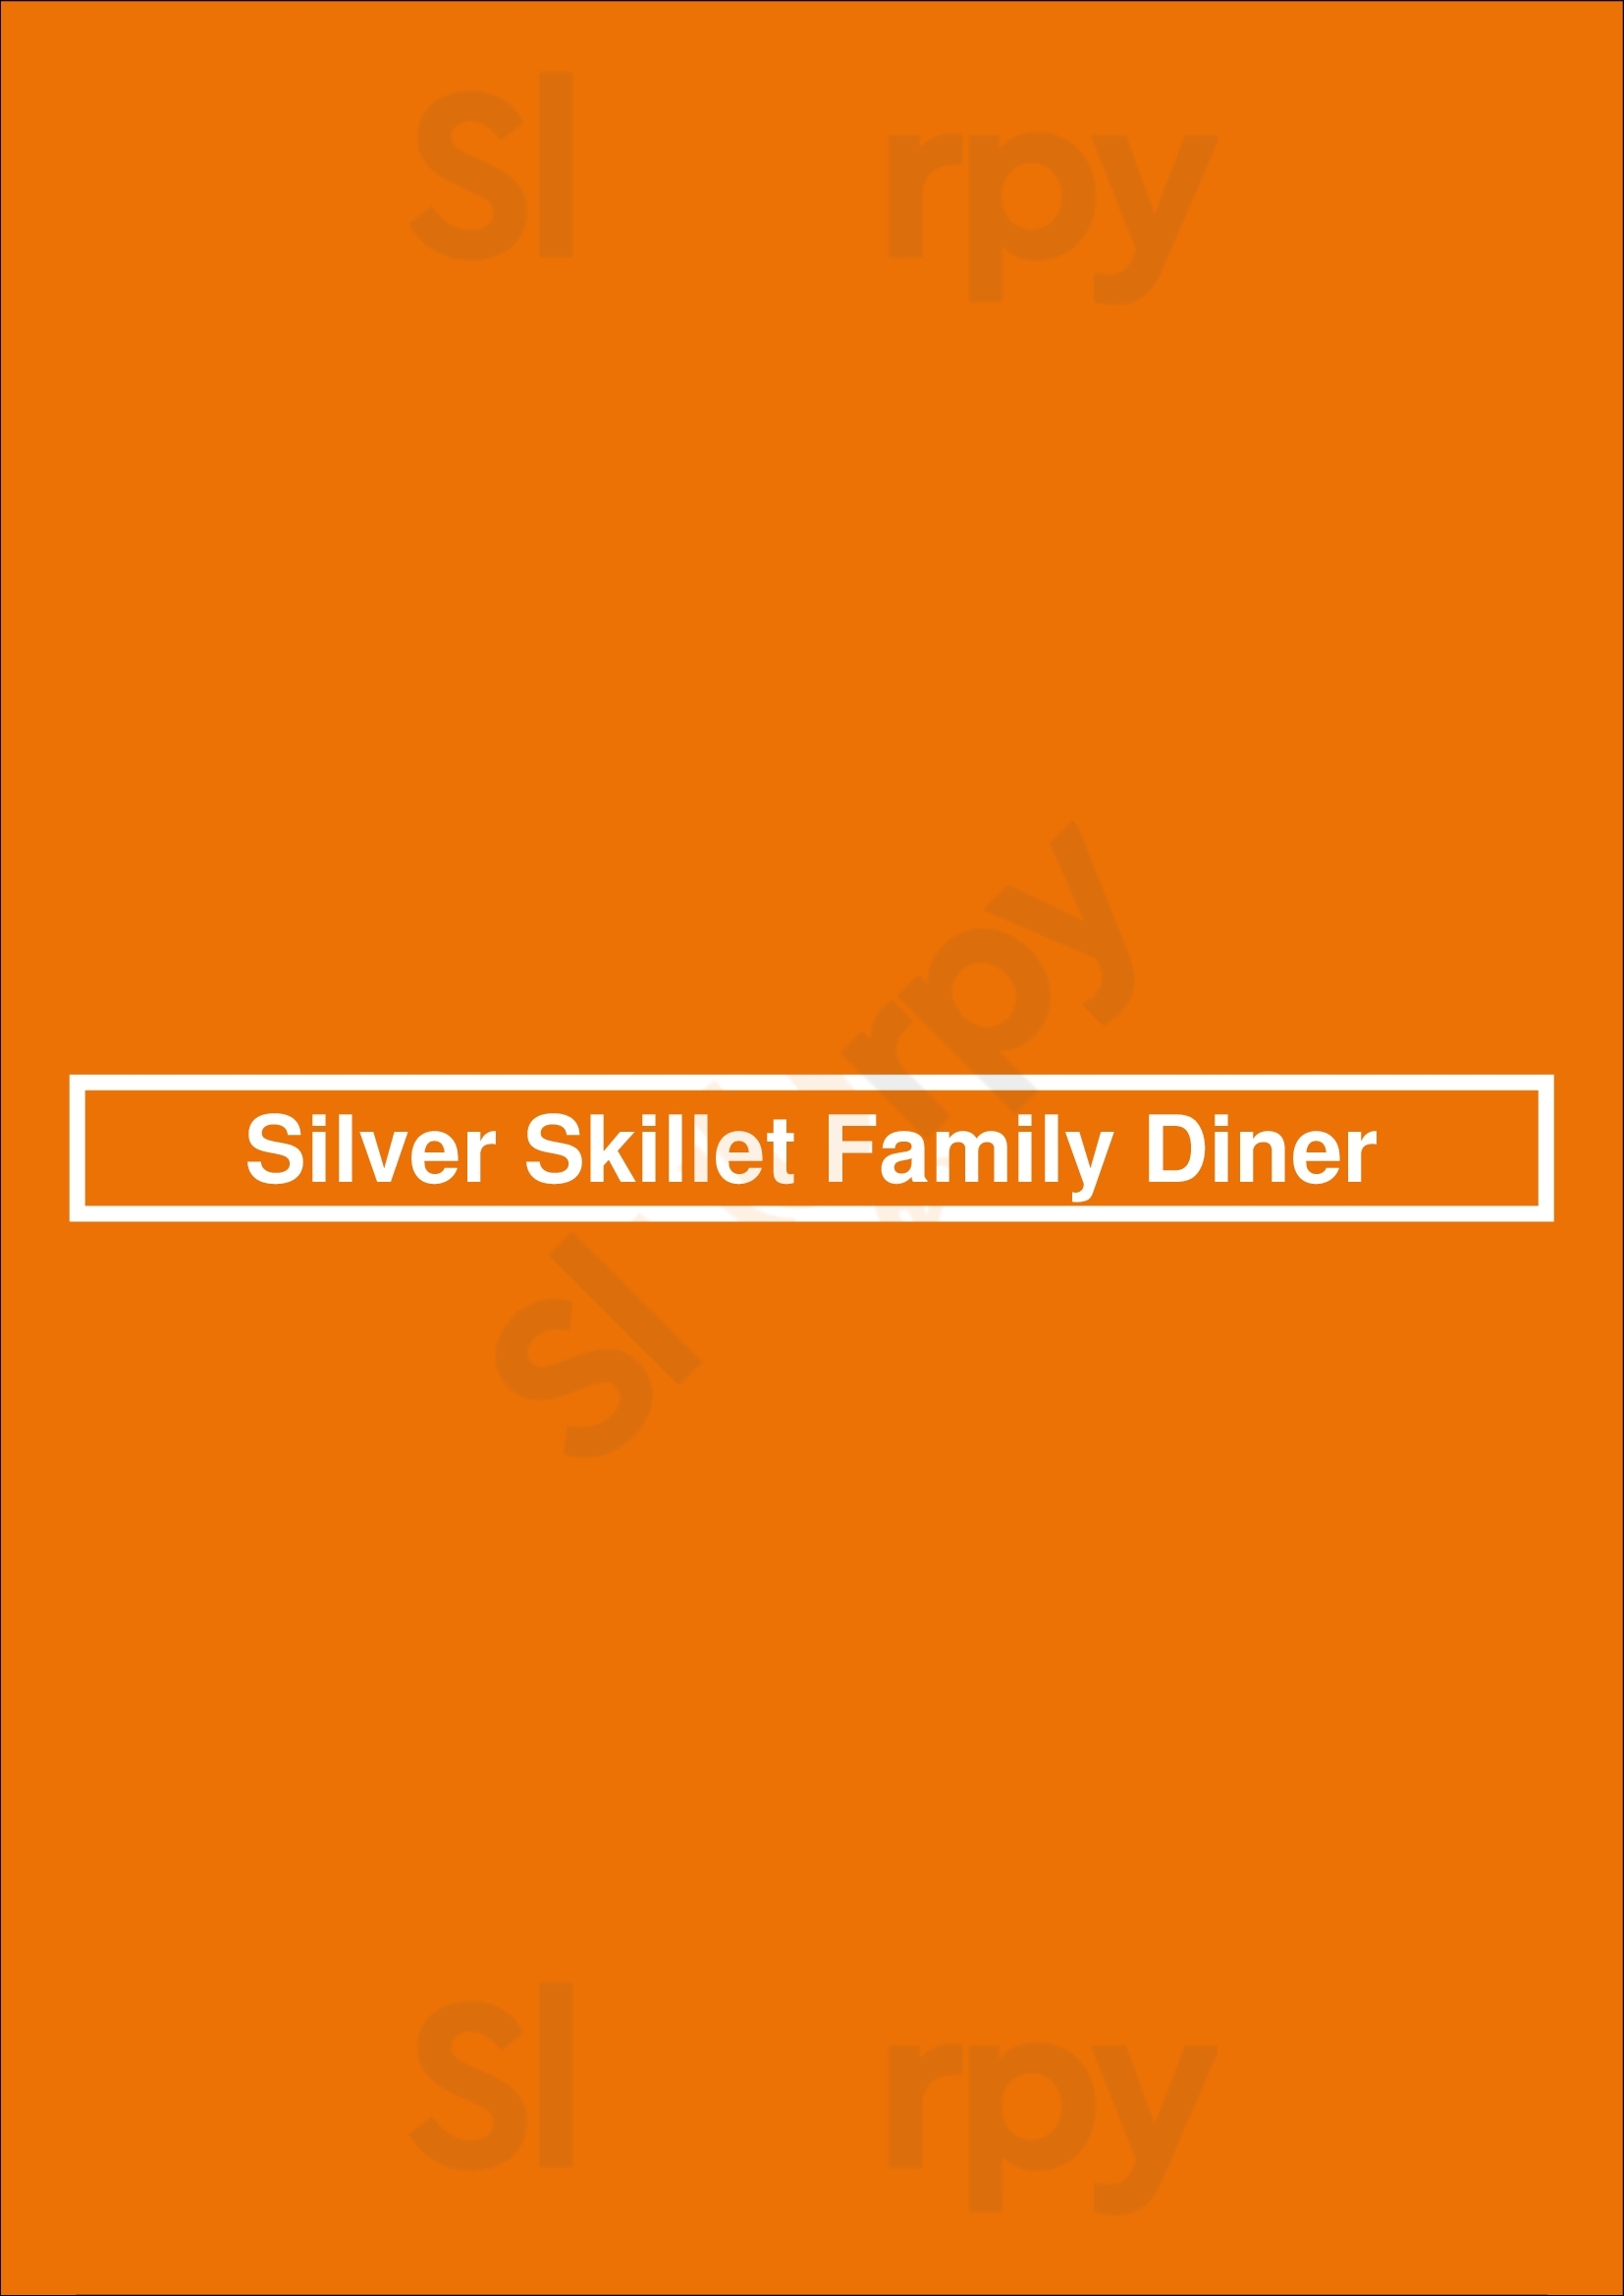 Silver Skillet Family Diner Tulsa Menu - 1